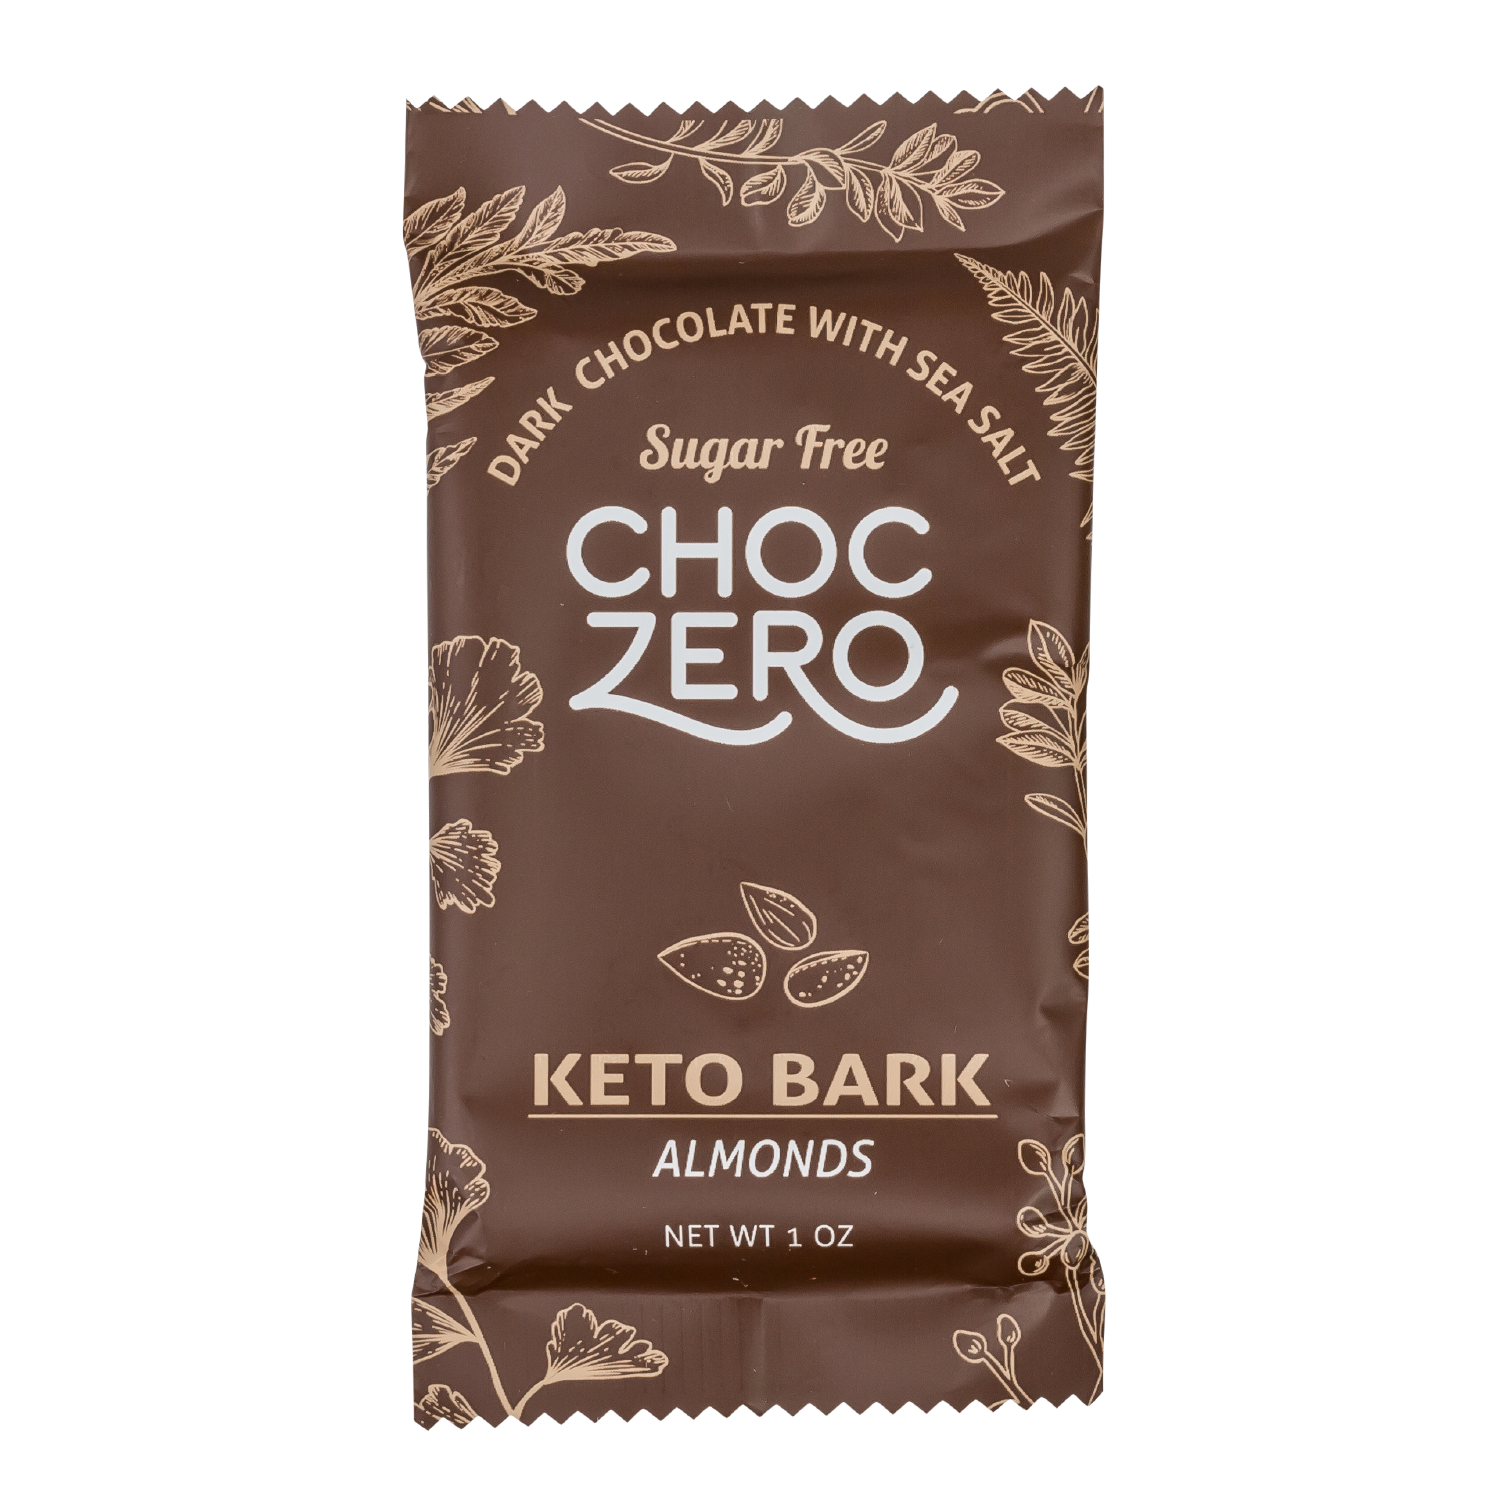 Choc Zero Keto Bark